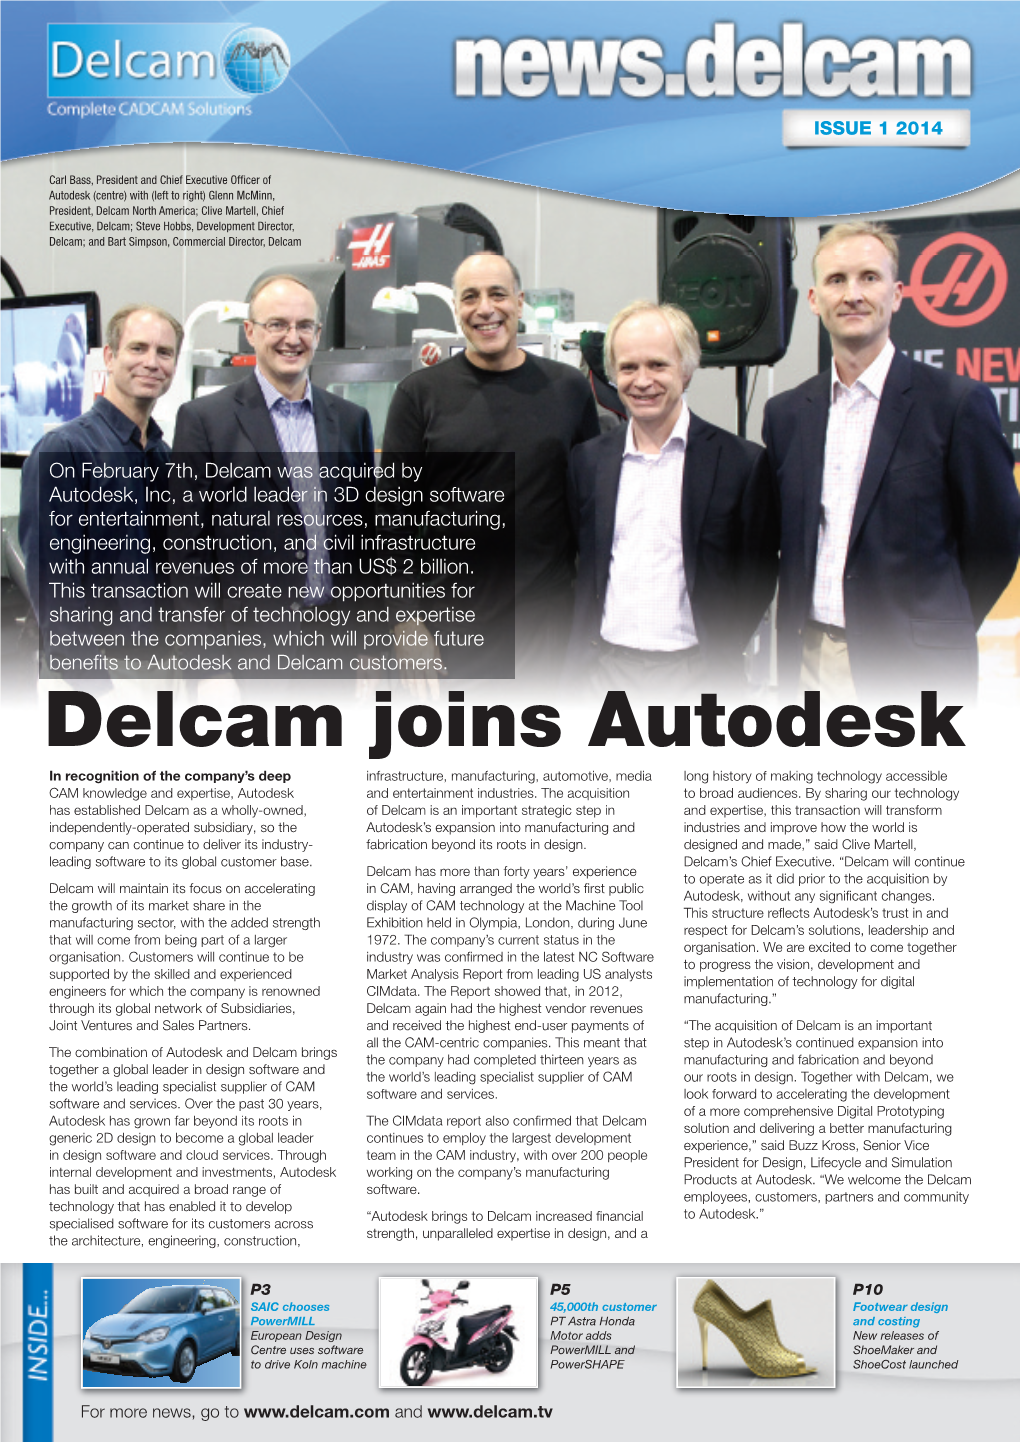 Delcam Joins Autodesk